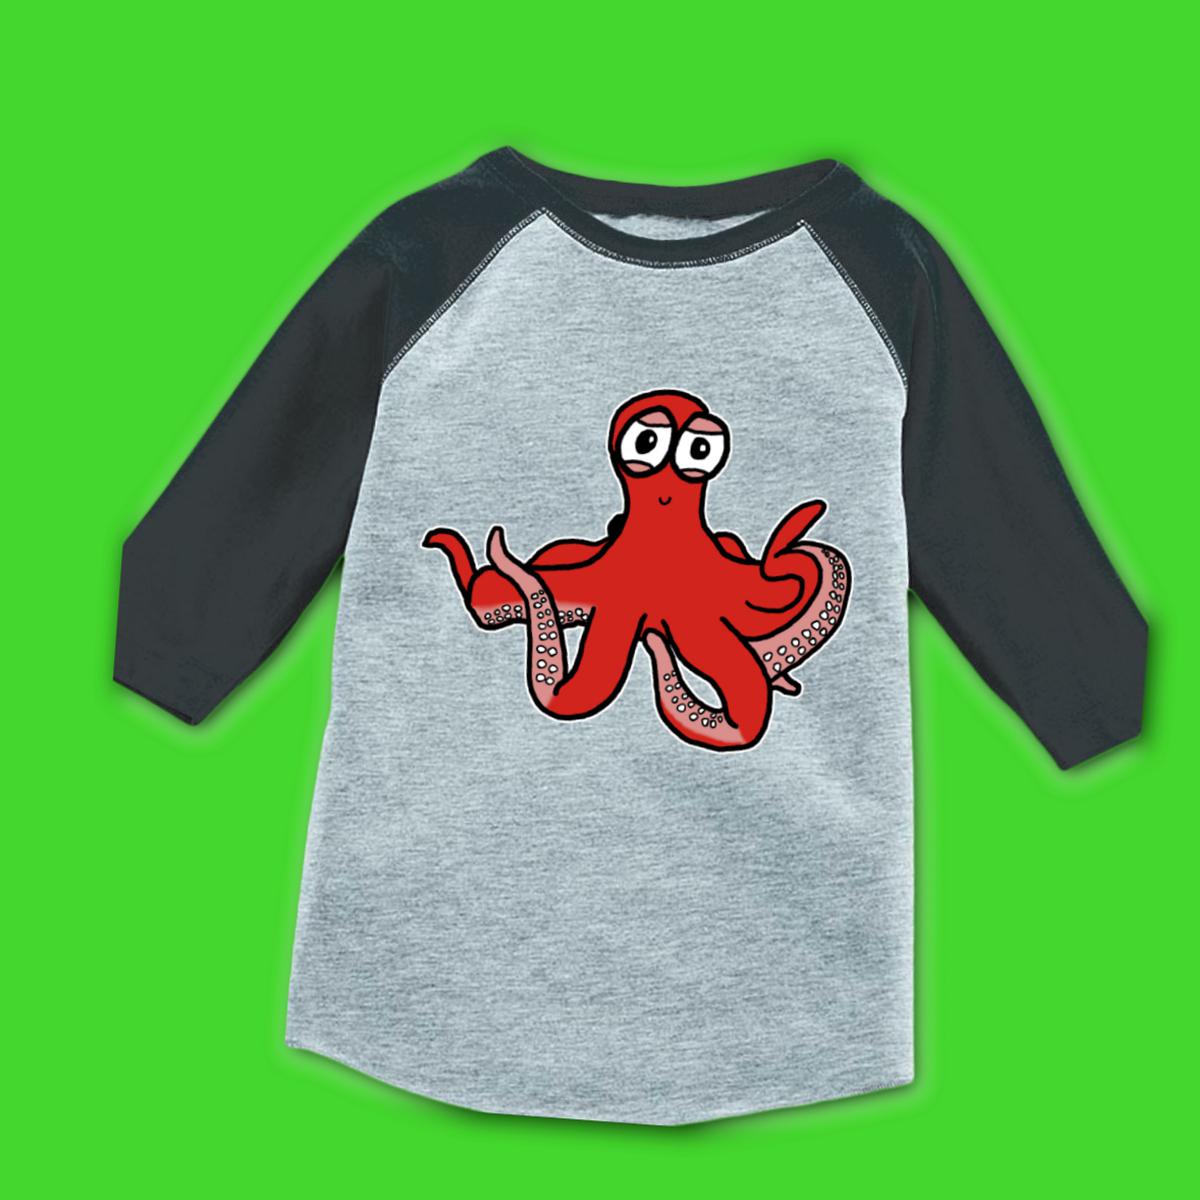 Octopus Kid's Raglan Tee